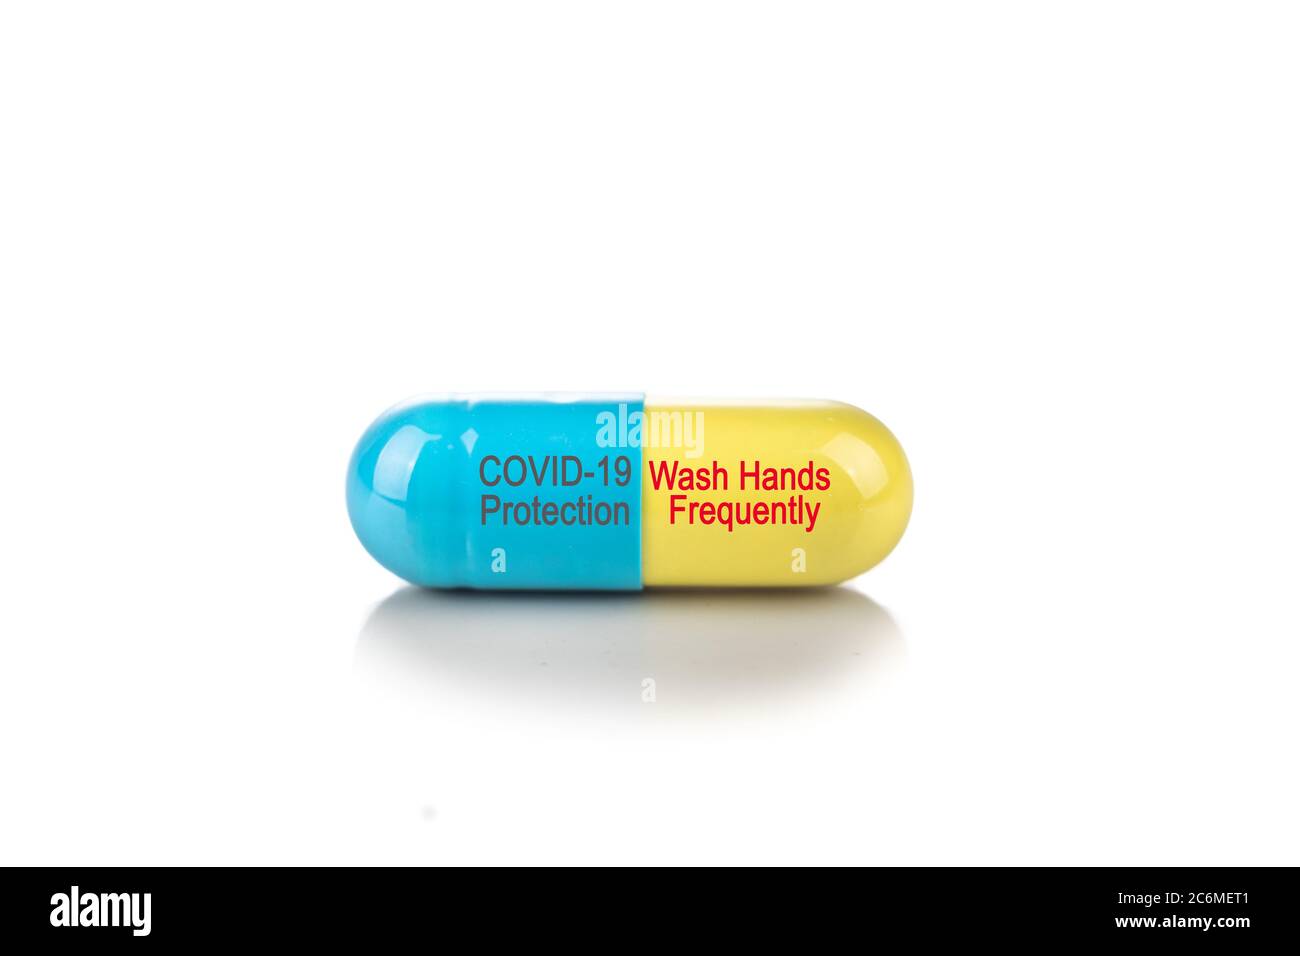 Capsula di protezione Conceptual Covid-19 con lavarsi le mani messaggio di avviso frequente su sfondo bianco Foto Stock